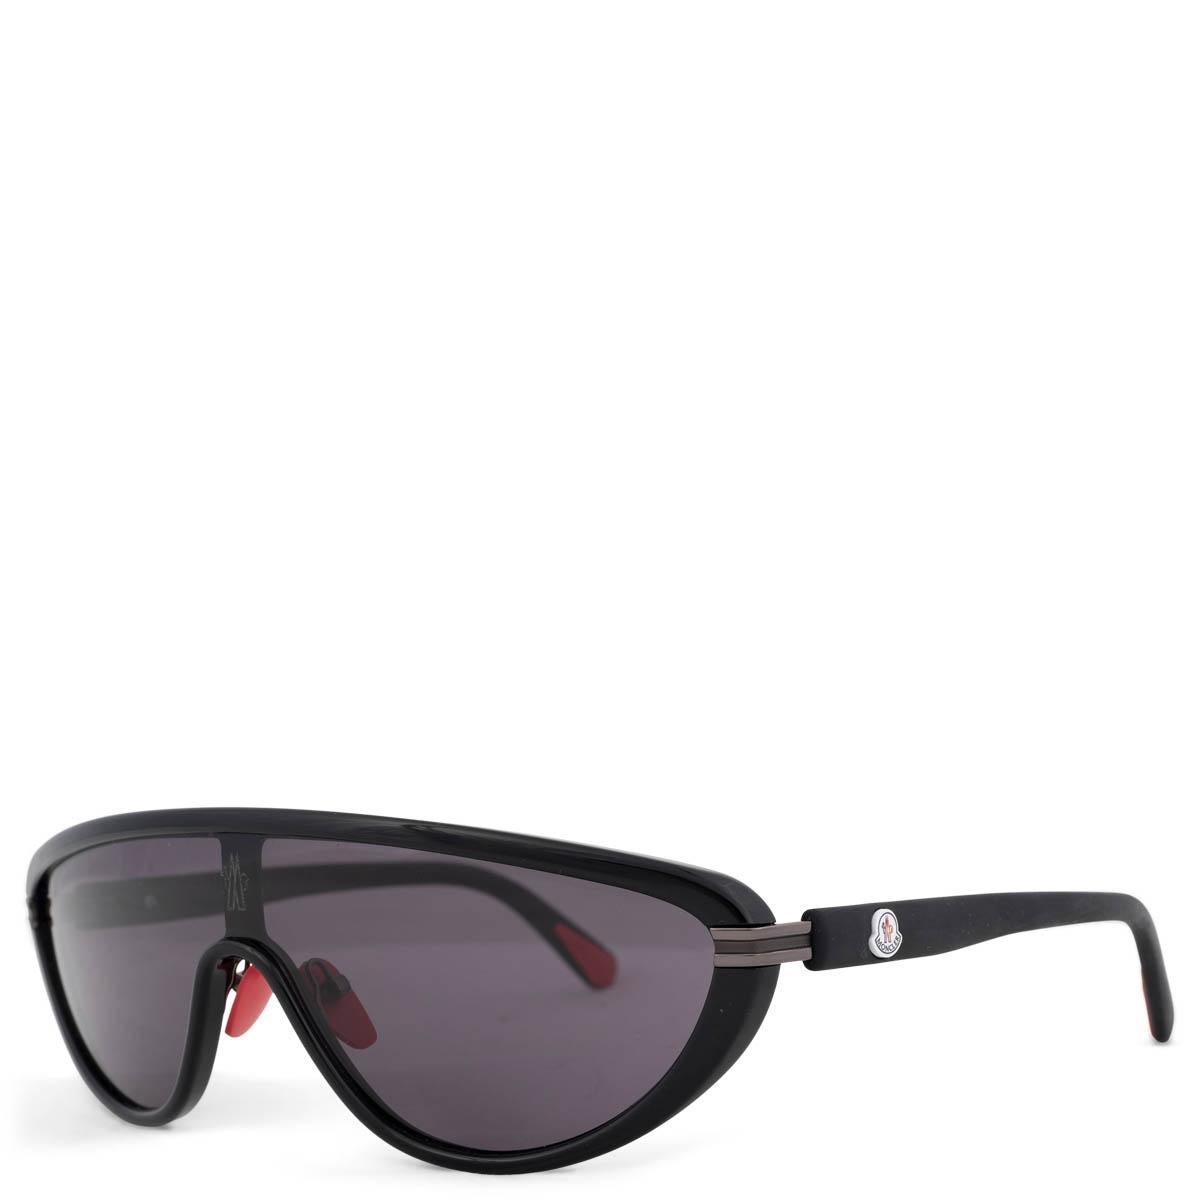 Les lunettes de soleil Moncler Vitesse shield, 100% authentiques, présentent une monture en acétate noir et des verres teintés ton sur ton avec des détails rouges. Les lentilles sont des filtres de catégorie 3. Ils ont été portés et sont en